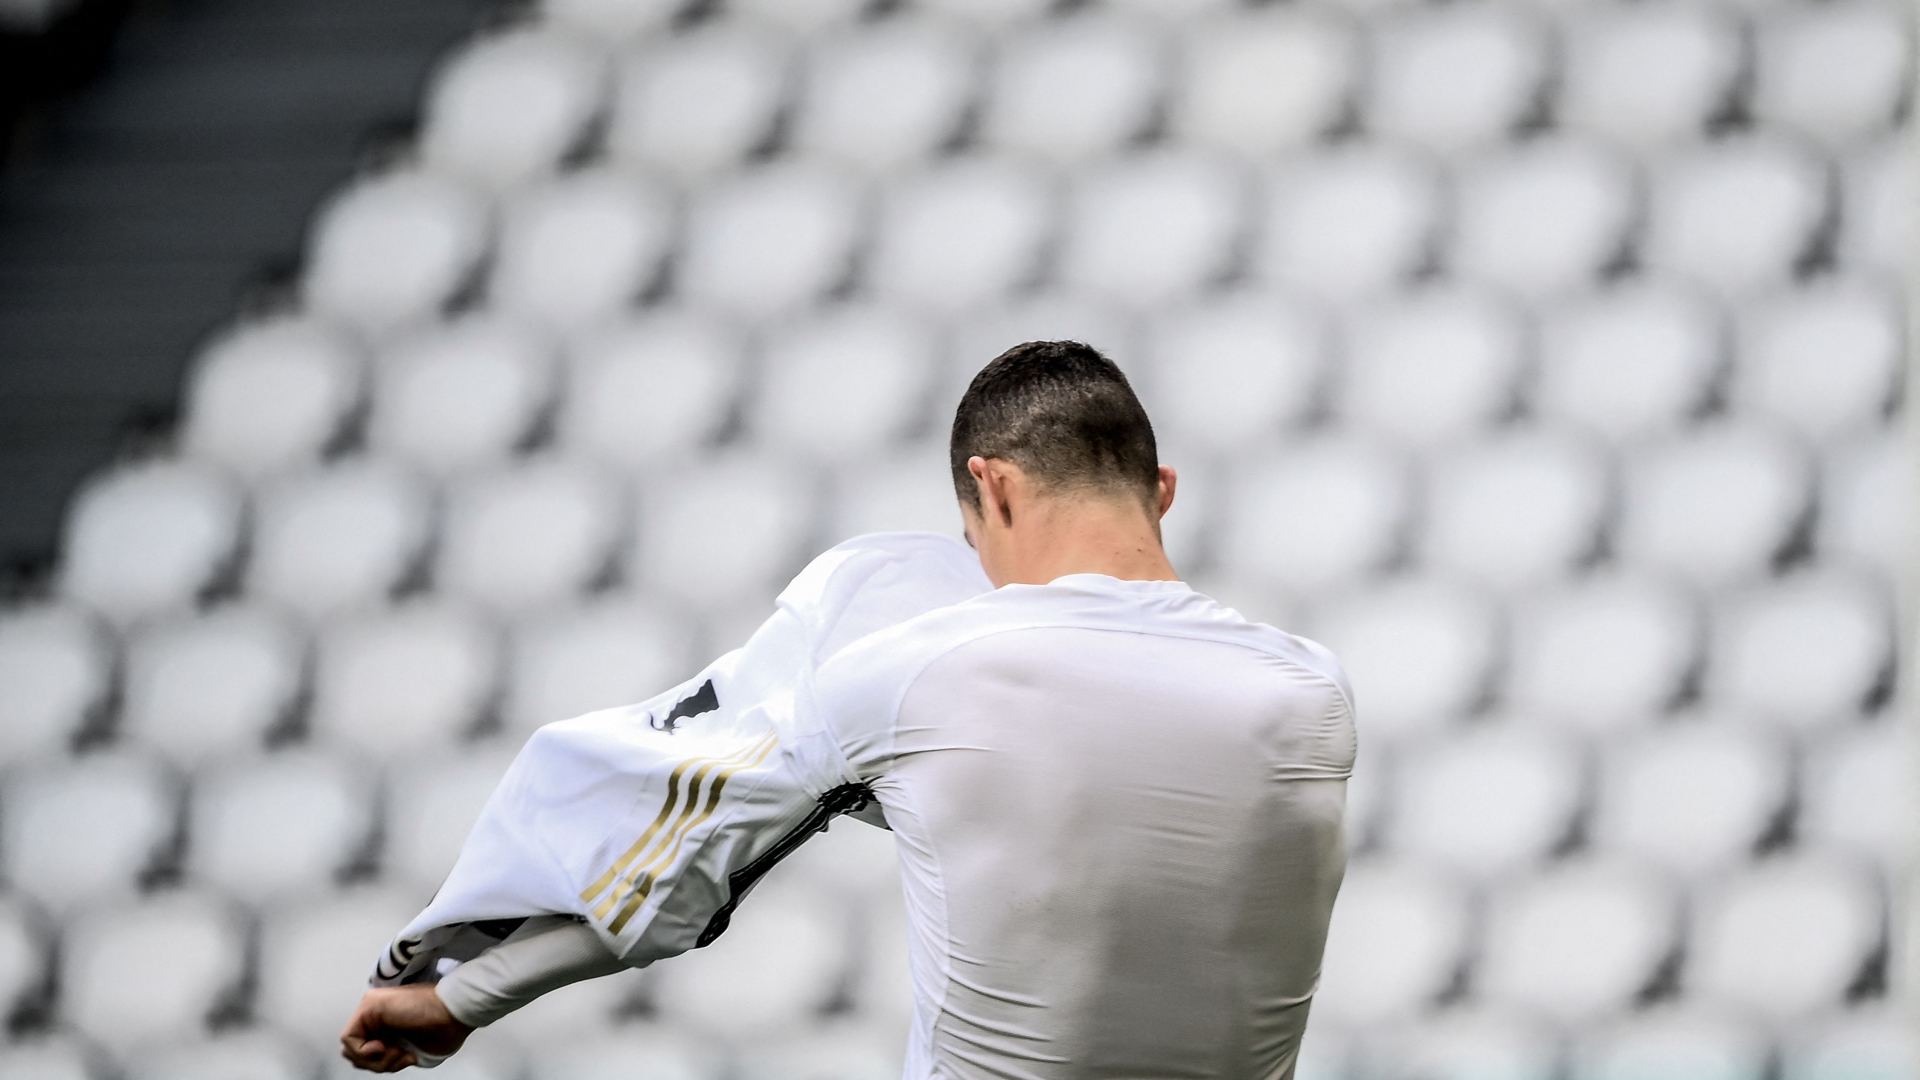 Topdaşıyan uşaq xahiş etdi, Ronaldo formasını yerə atdı - VİDEO